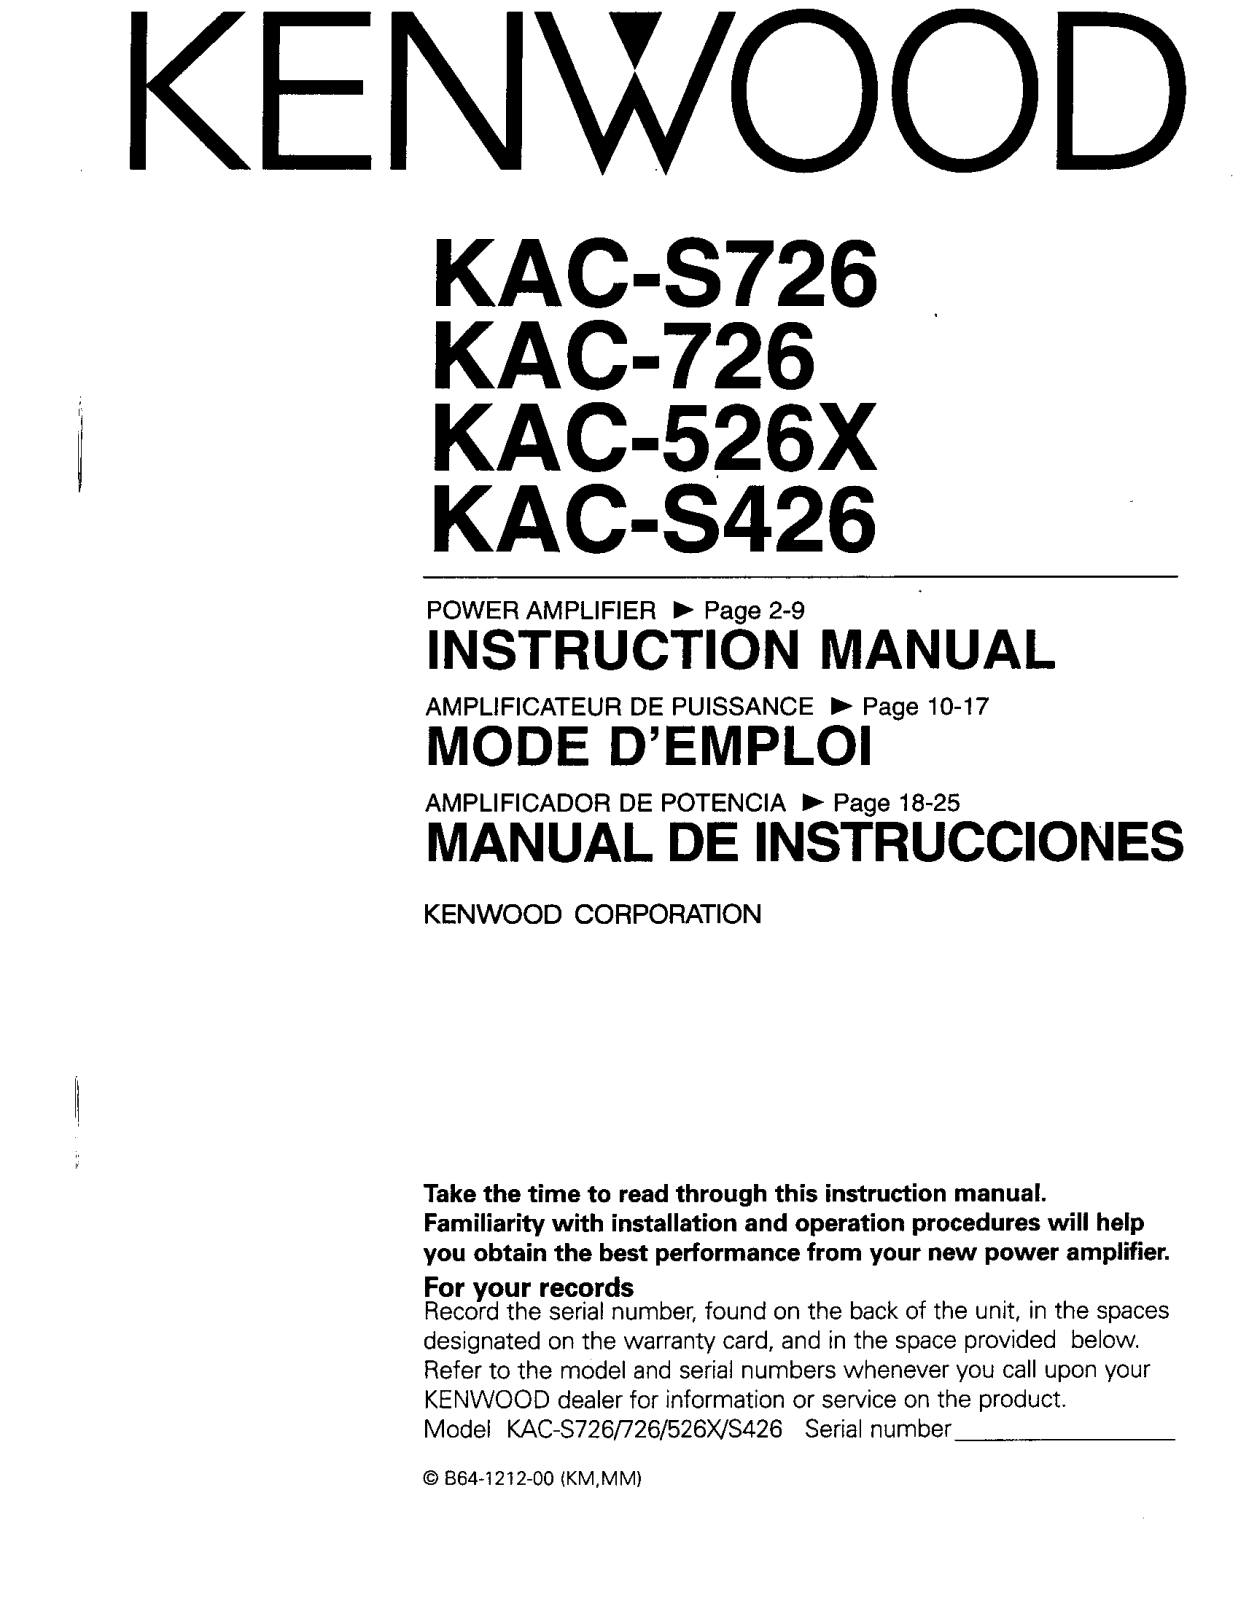 Kenwood KAC-S426, KAC-S726, KAC-726, KAC-526X Owner's Manual